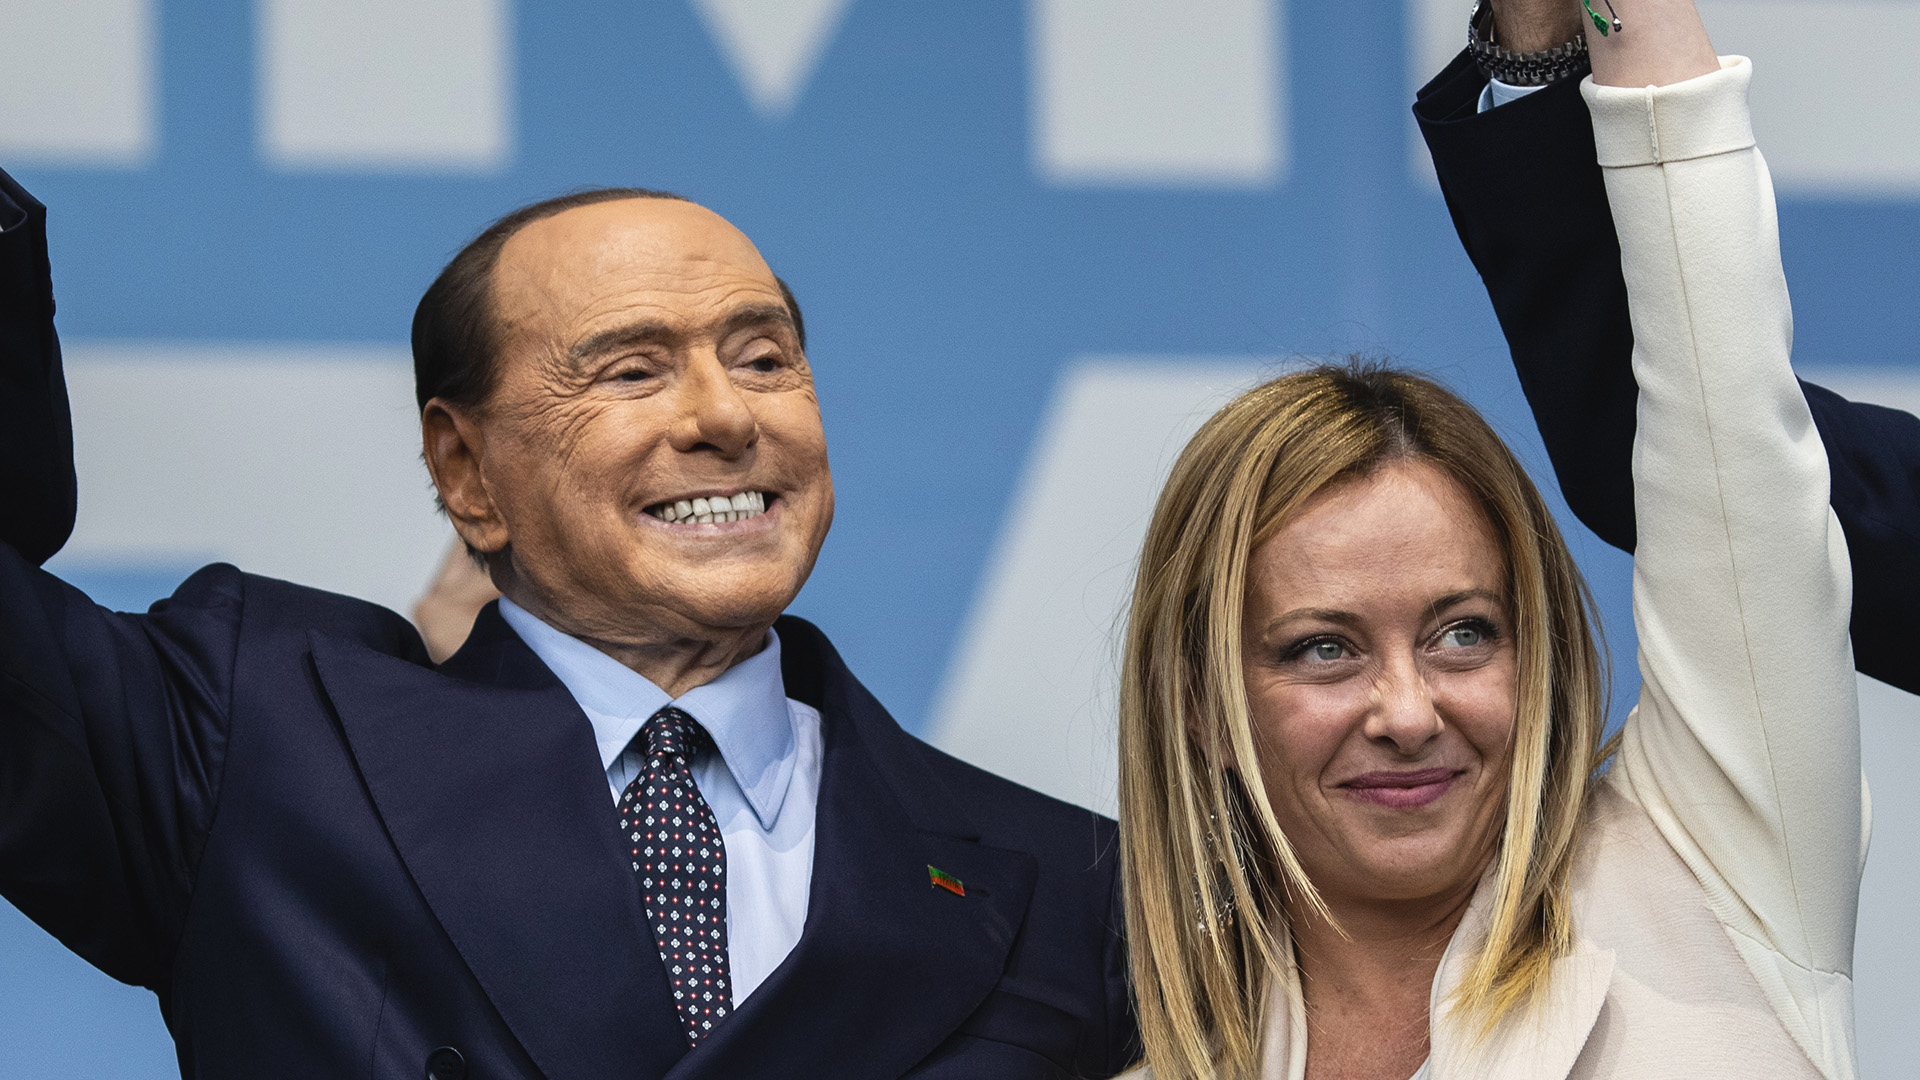 Coalizione di destra in Italia: la benedizione della casa è perversa